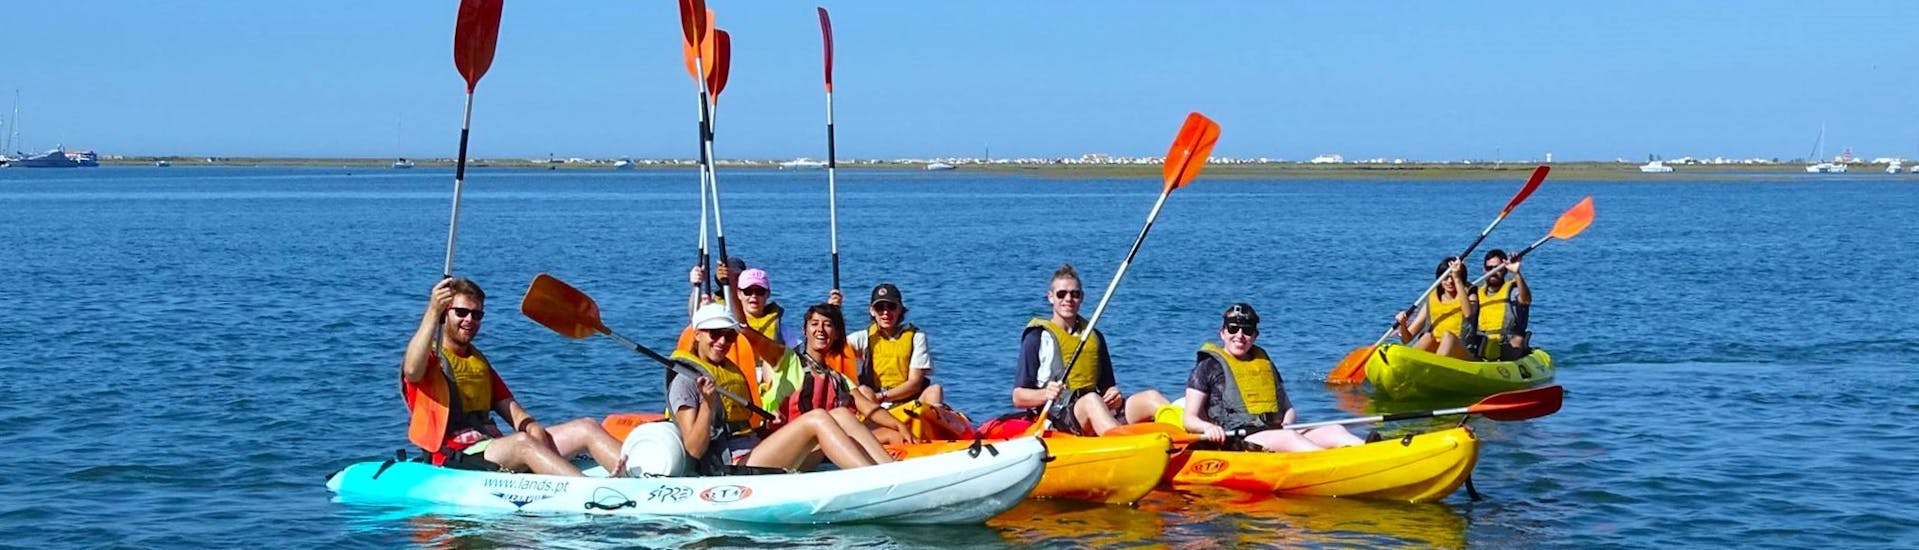 Un groupe de participants pagayant sur la Ria Formosa par une journée ensoleillée lors d'une balade en canoë-kayak depuis Faro avec Lands Algarve.